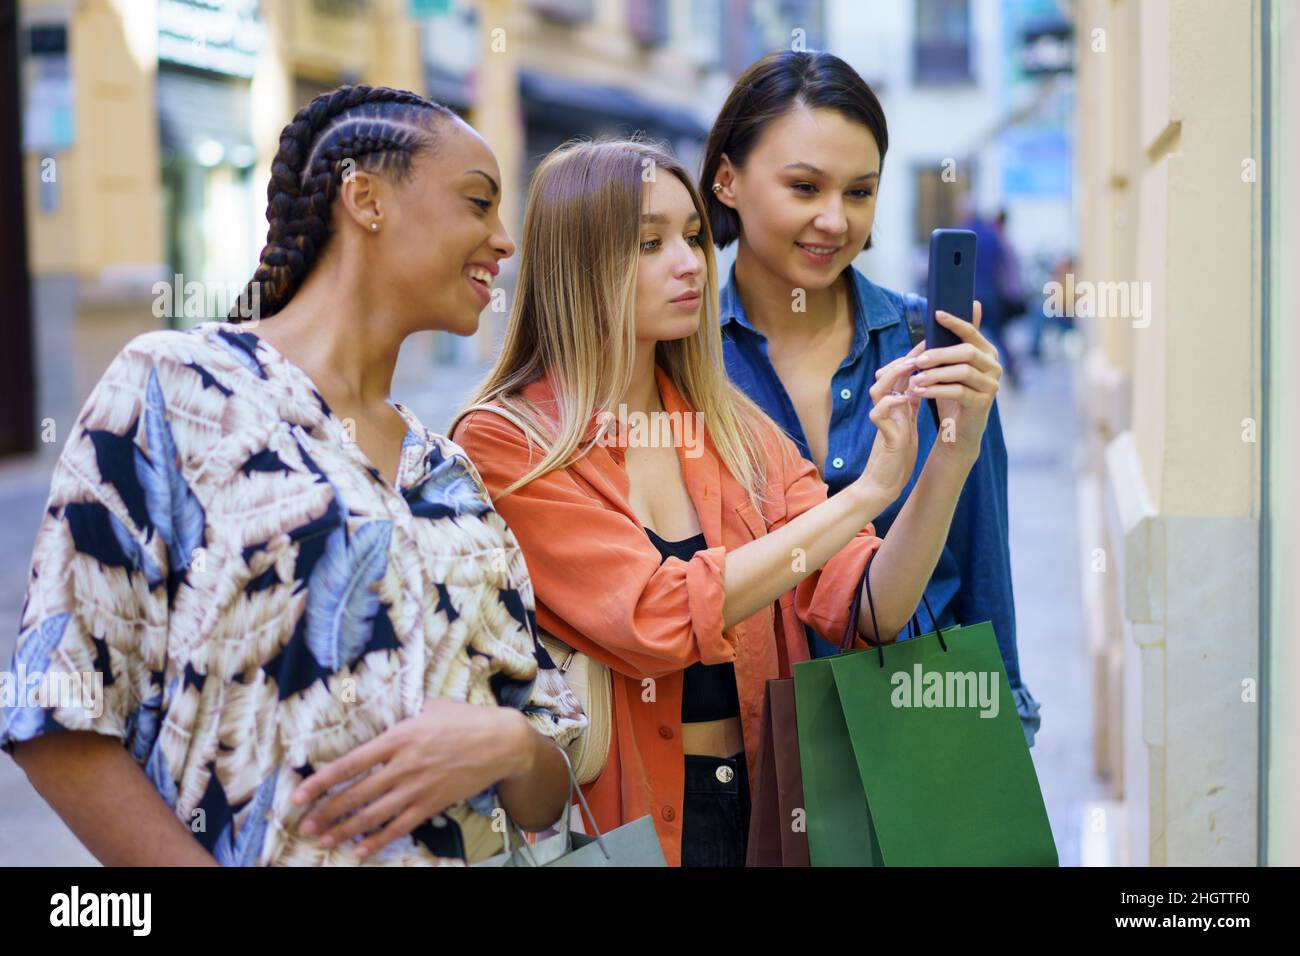 Modische multirassische Damen, die beim Einkaufen in der Stadt Fotos auf dem Smartphone machen Stockfoto